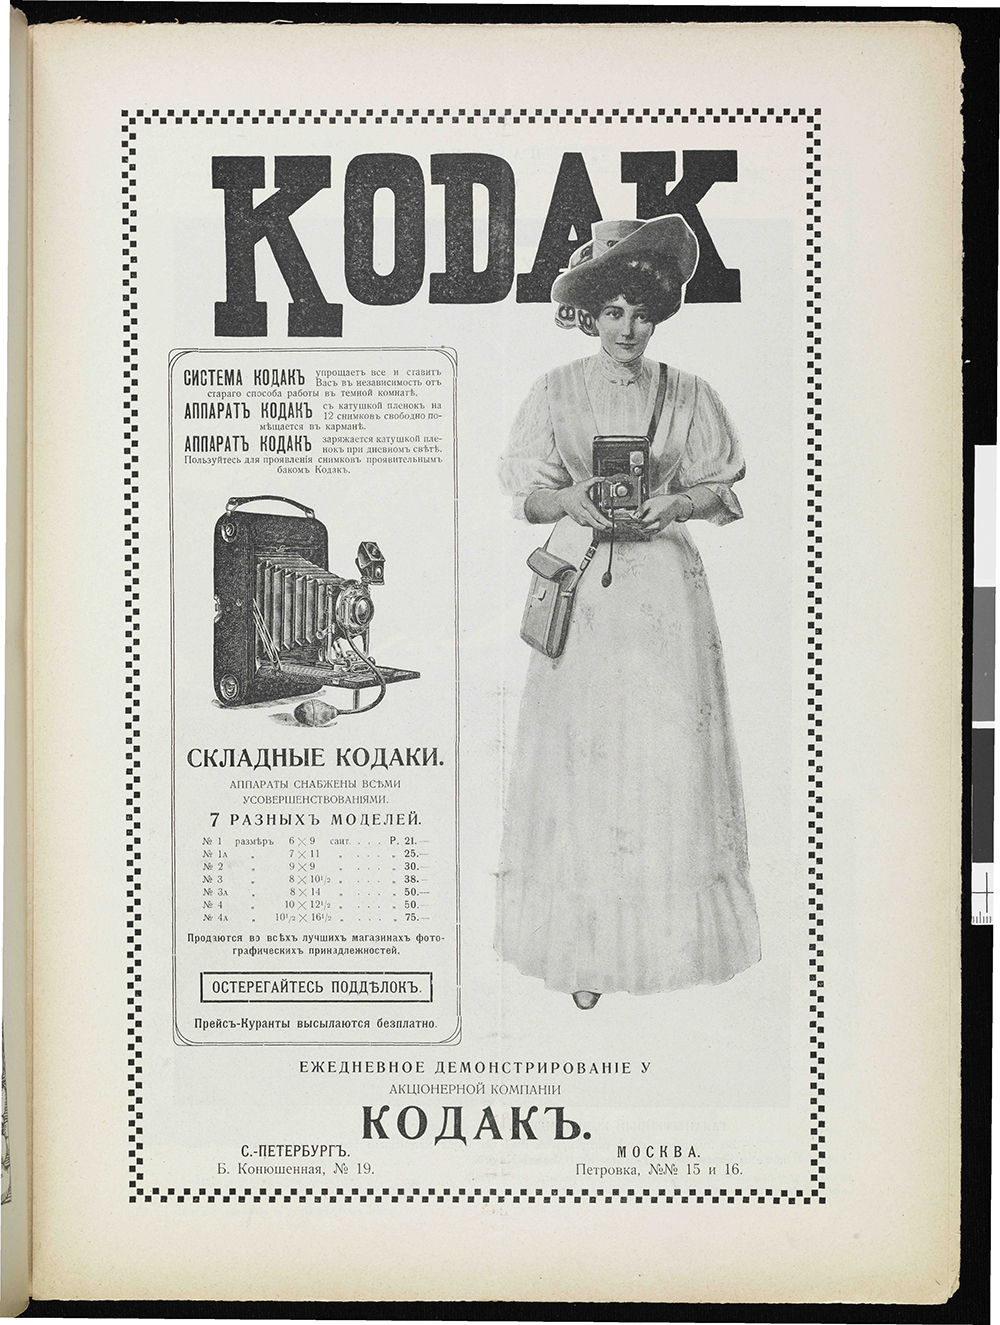 Старая реклама фототехники в дореволюционных журналах и плакатах | Фотография Konstantin Orekhov | OKEBLOG